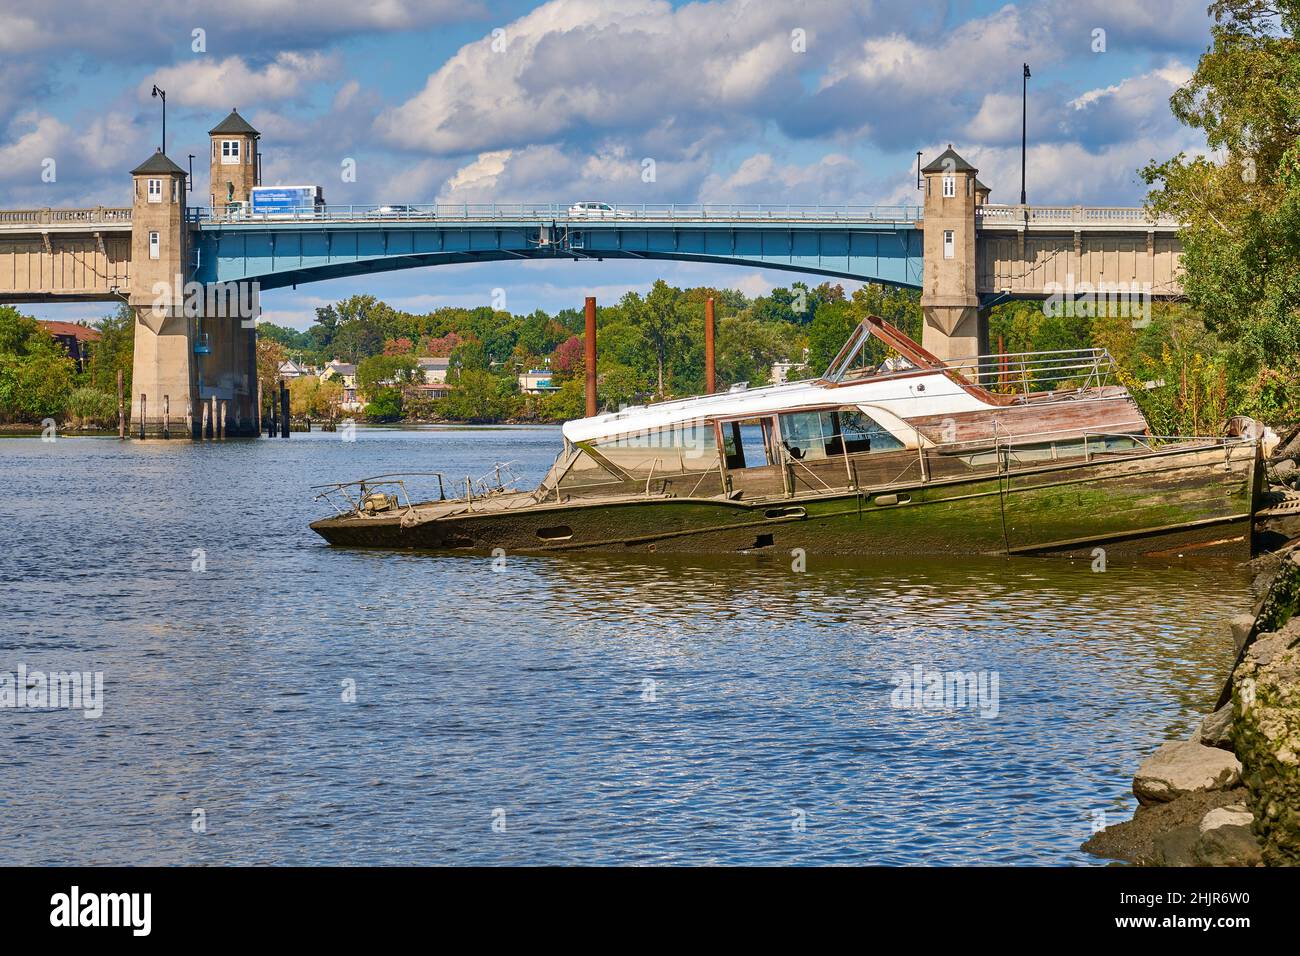 Barca d'epoca a mezza barca. Sulle rive del fiume Hackensack nel New Jersey, USA. Guardando a nord verso il ponte levatoio su Winant Avenue, Route 46 est Foto Stock